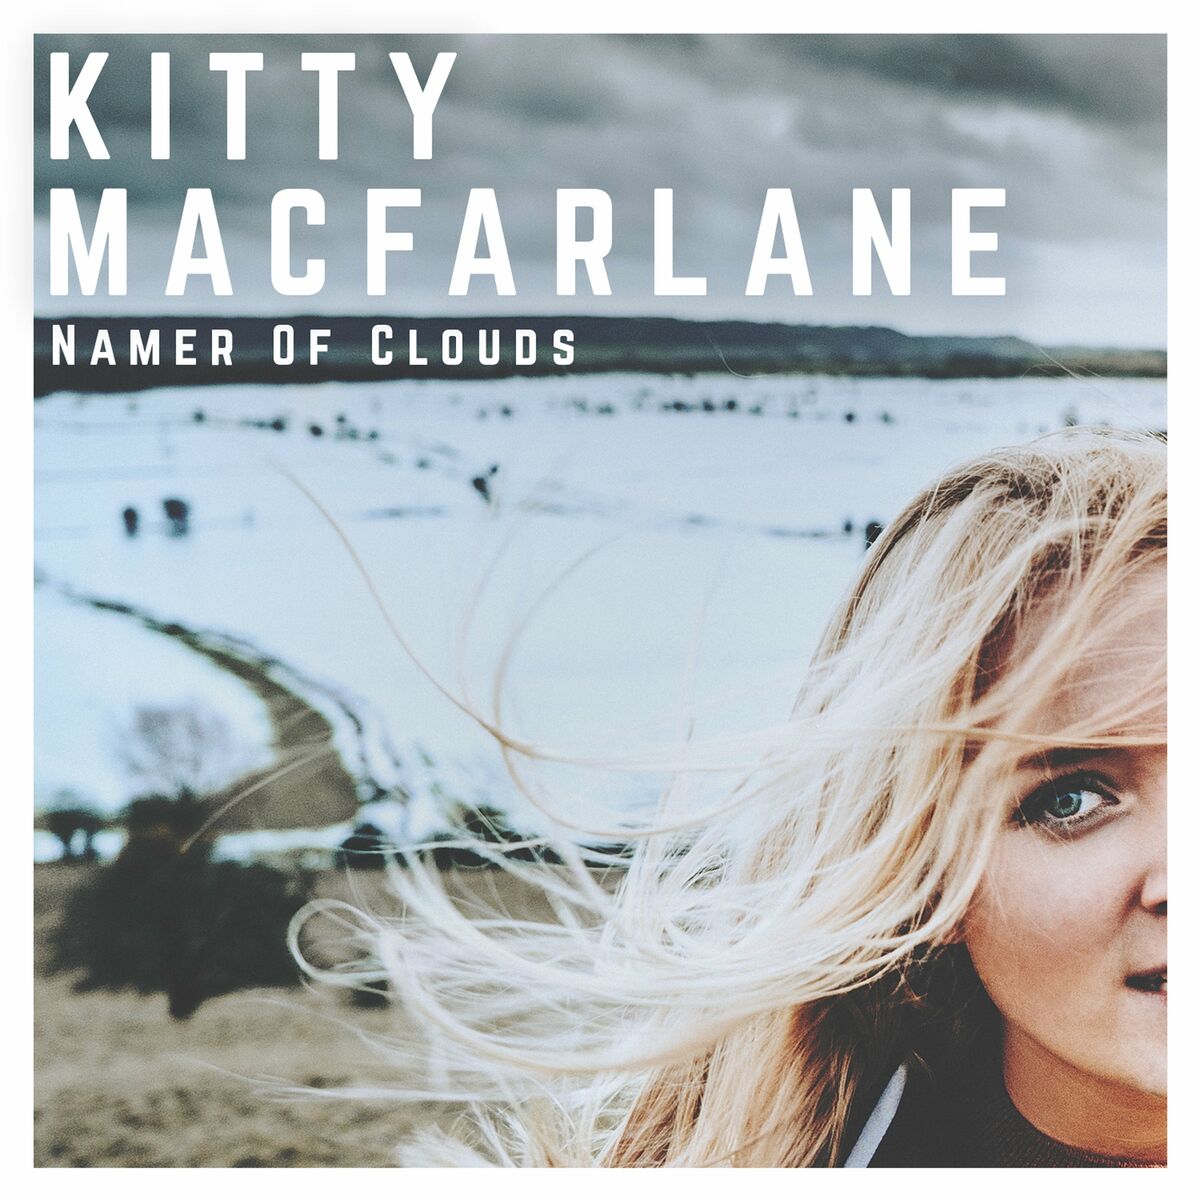 Kitty Ma cfarlane – 2018 - Namer of Clouds